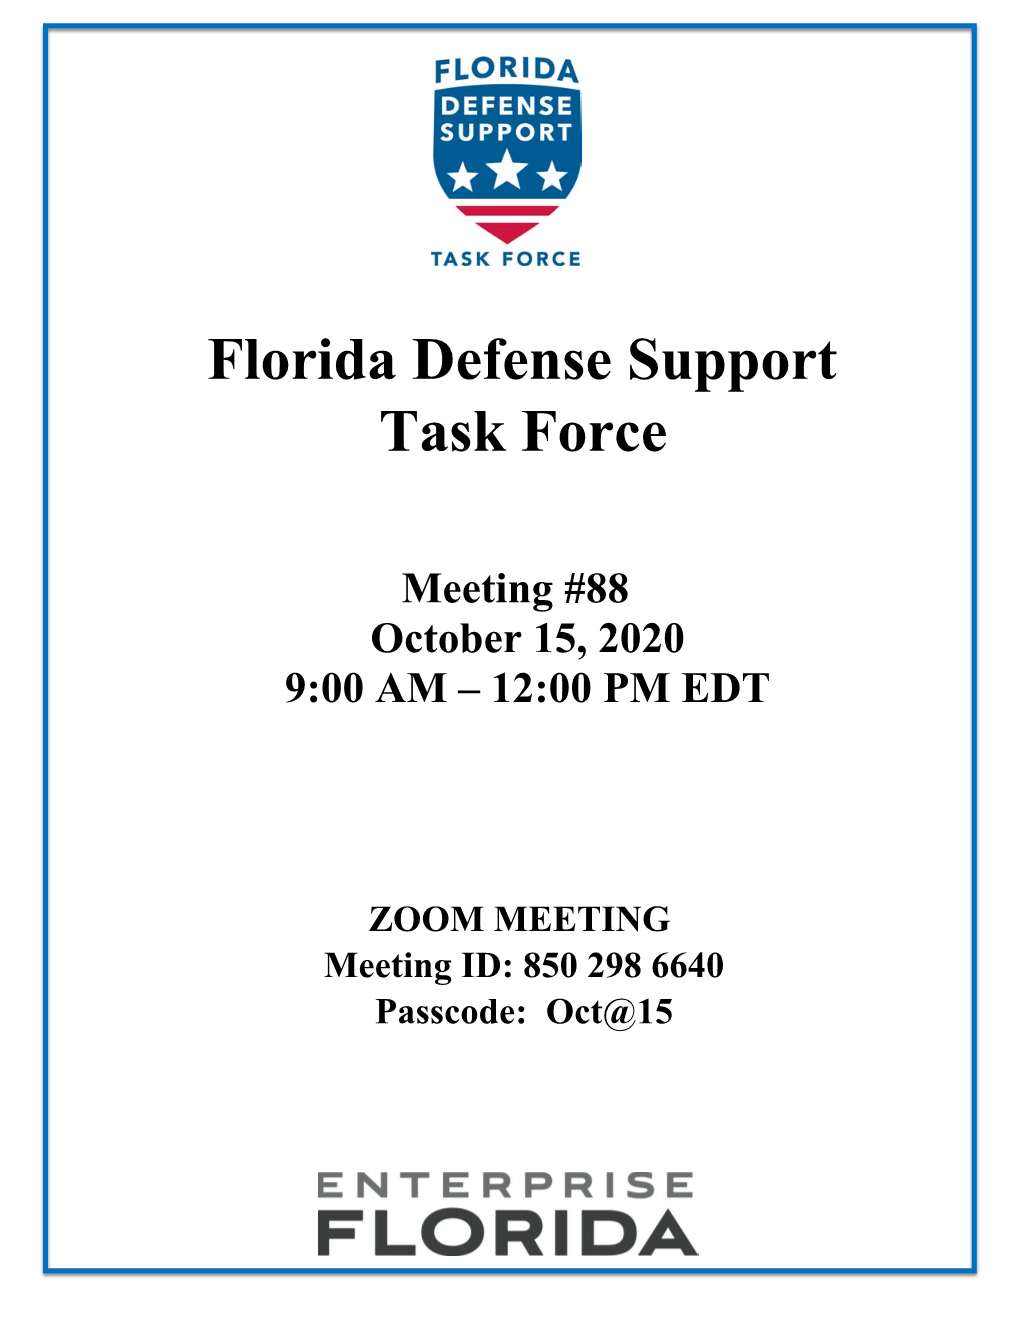 Florida Defense Support Task Force